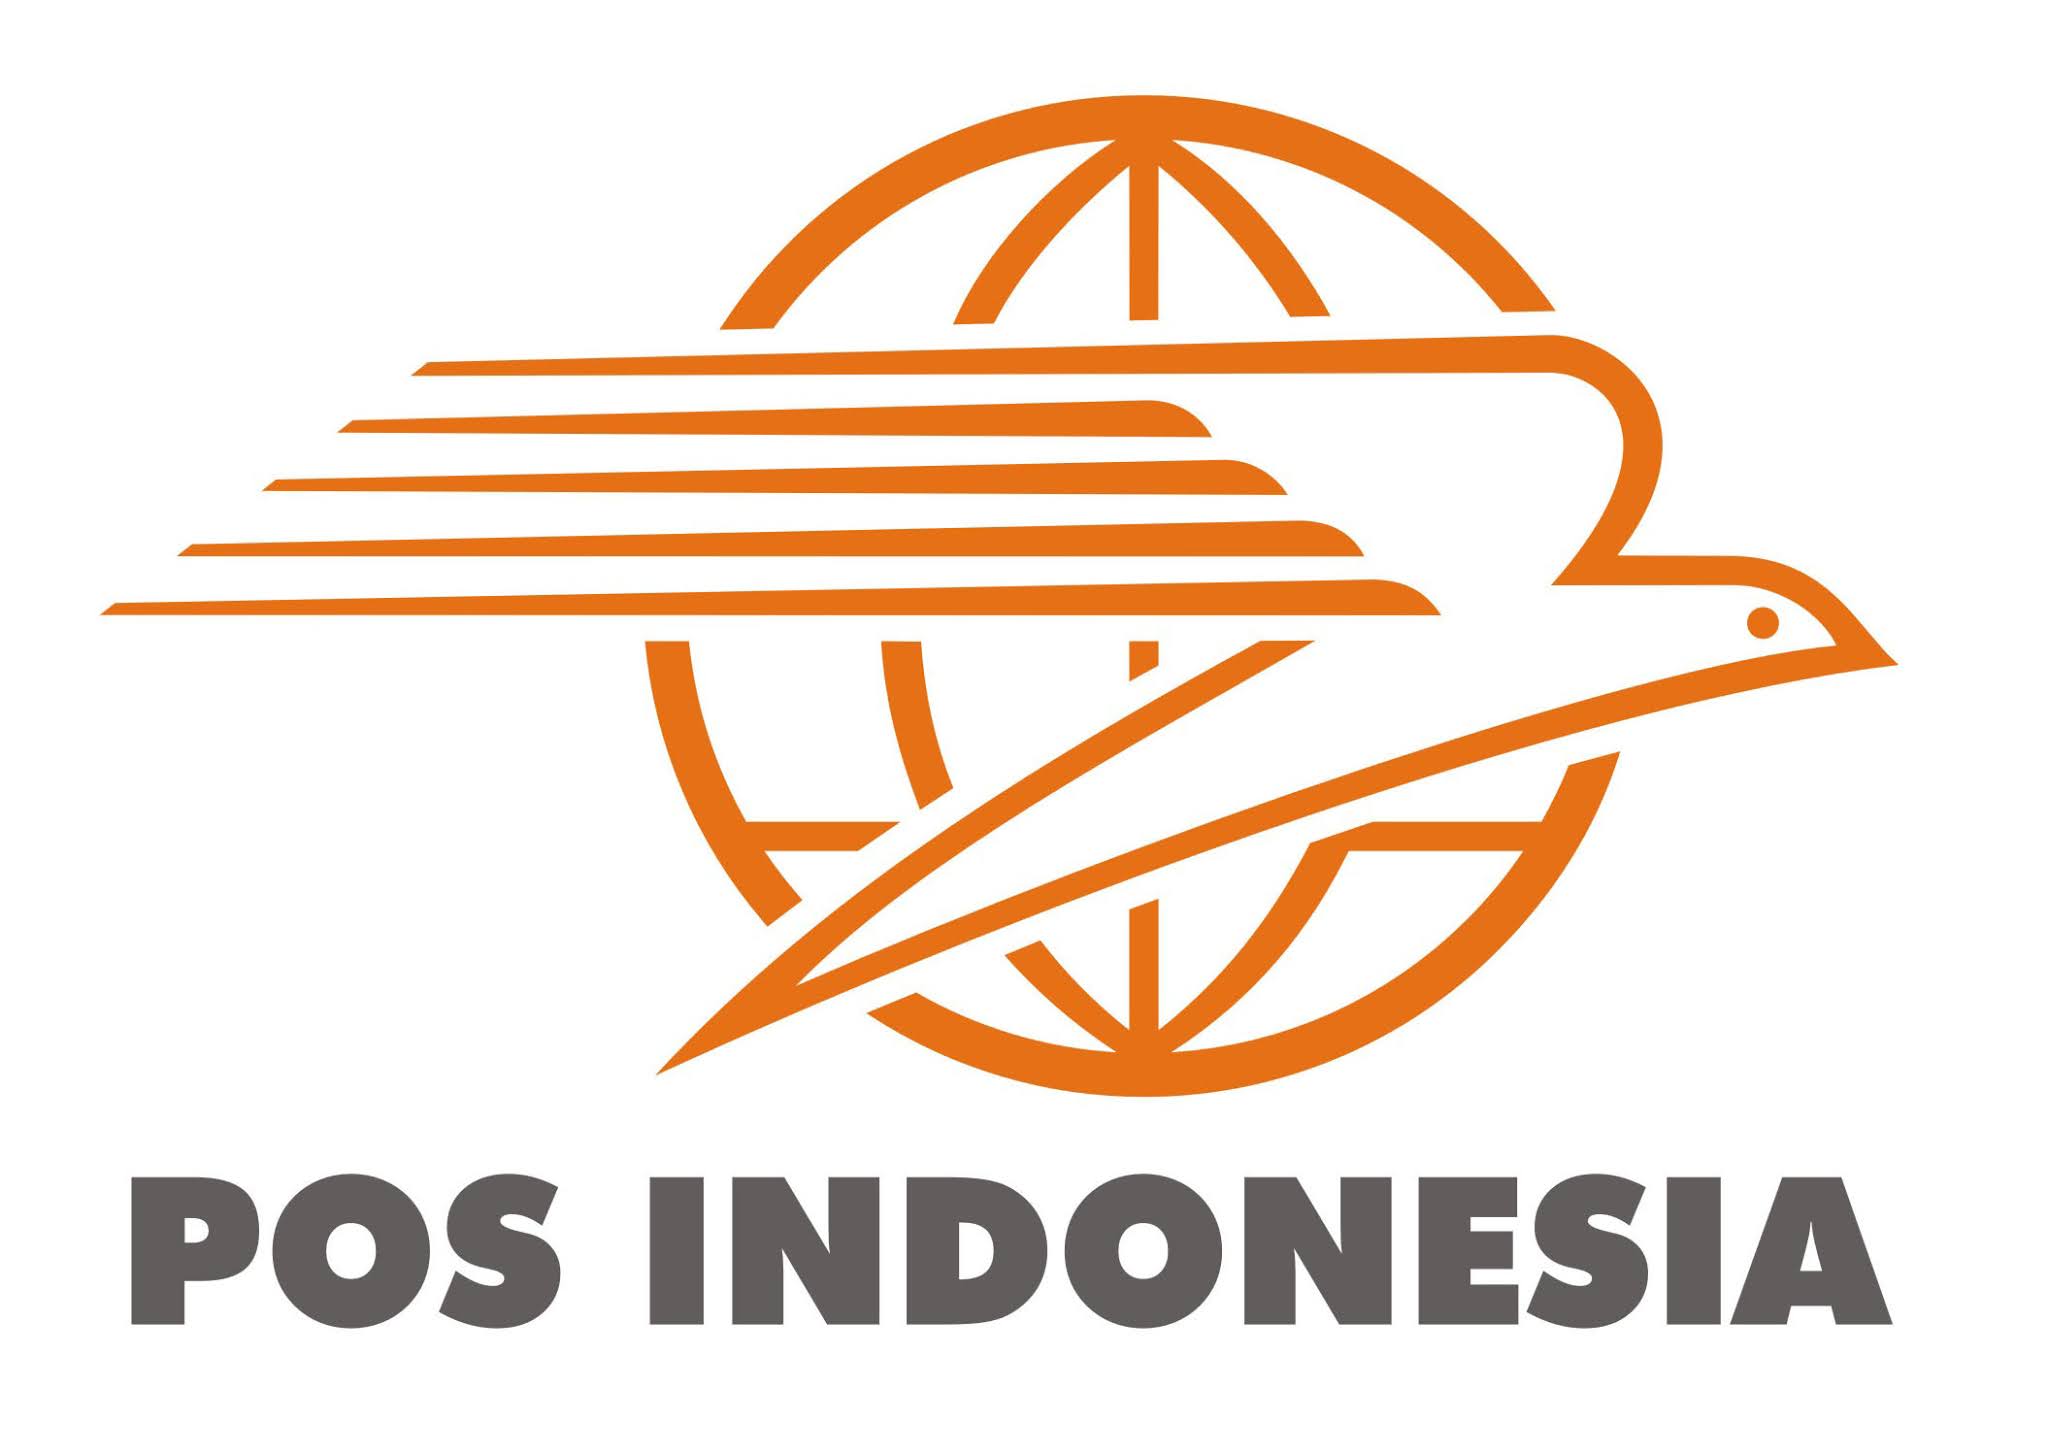 Lowongan Kerja Pt Pos Indonesia D3 S1 Semua Jurusan Desember 2020 Lowongan Kerja Lowongan Kerja 2021 Lowongan Kerja Bulan Januari 2021